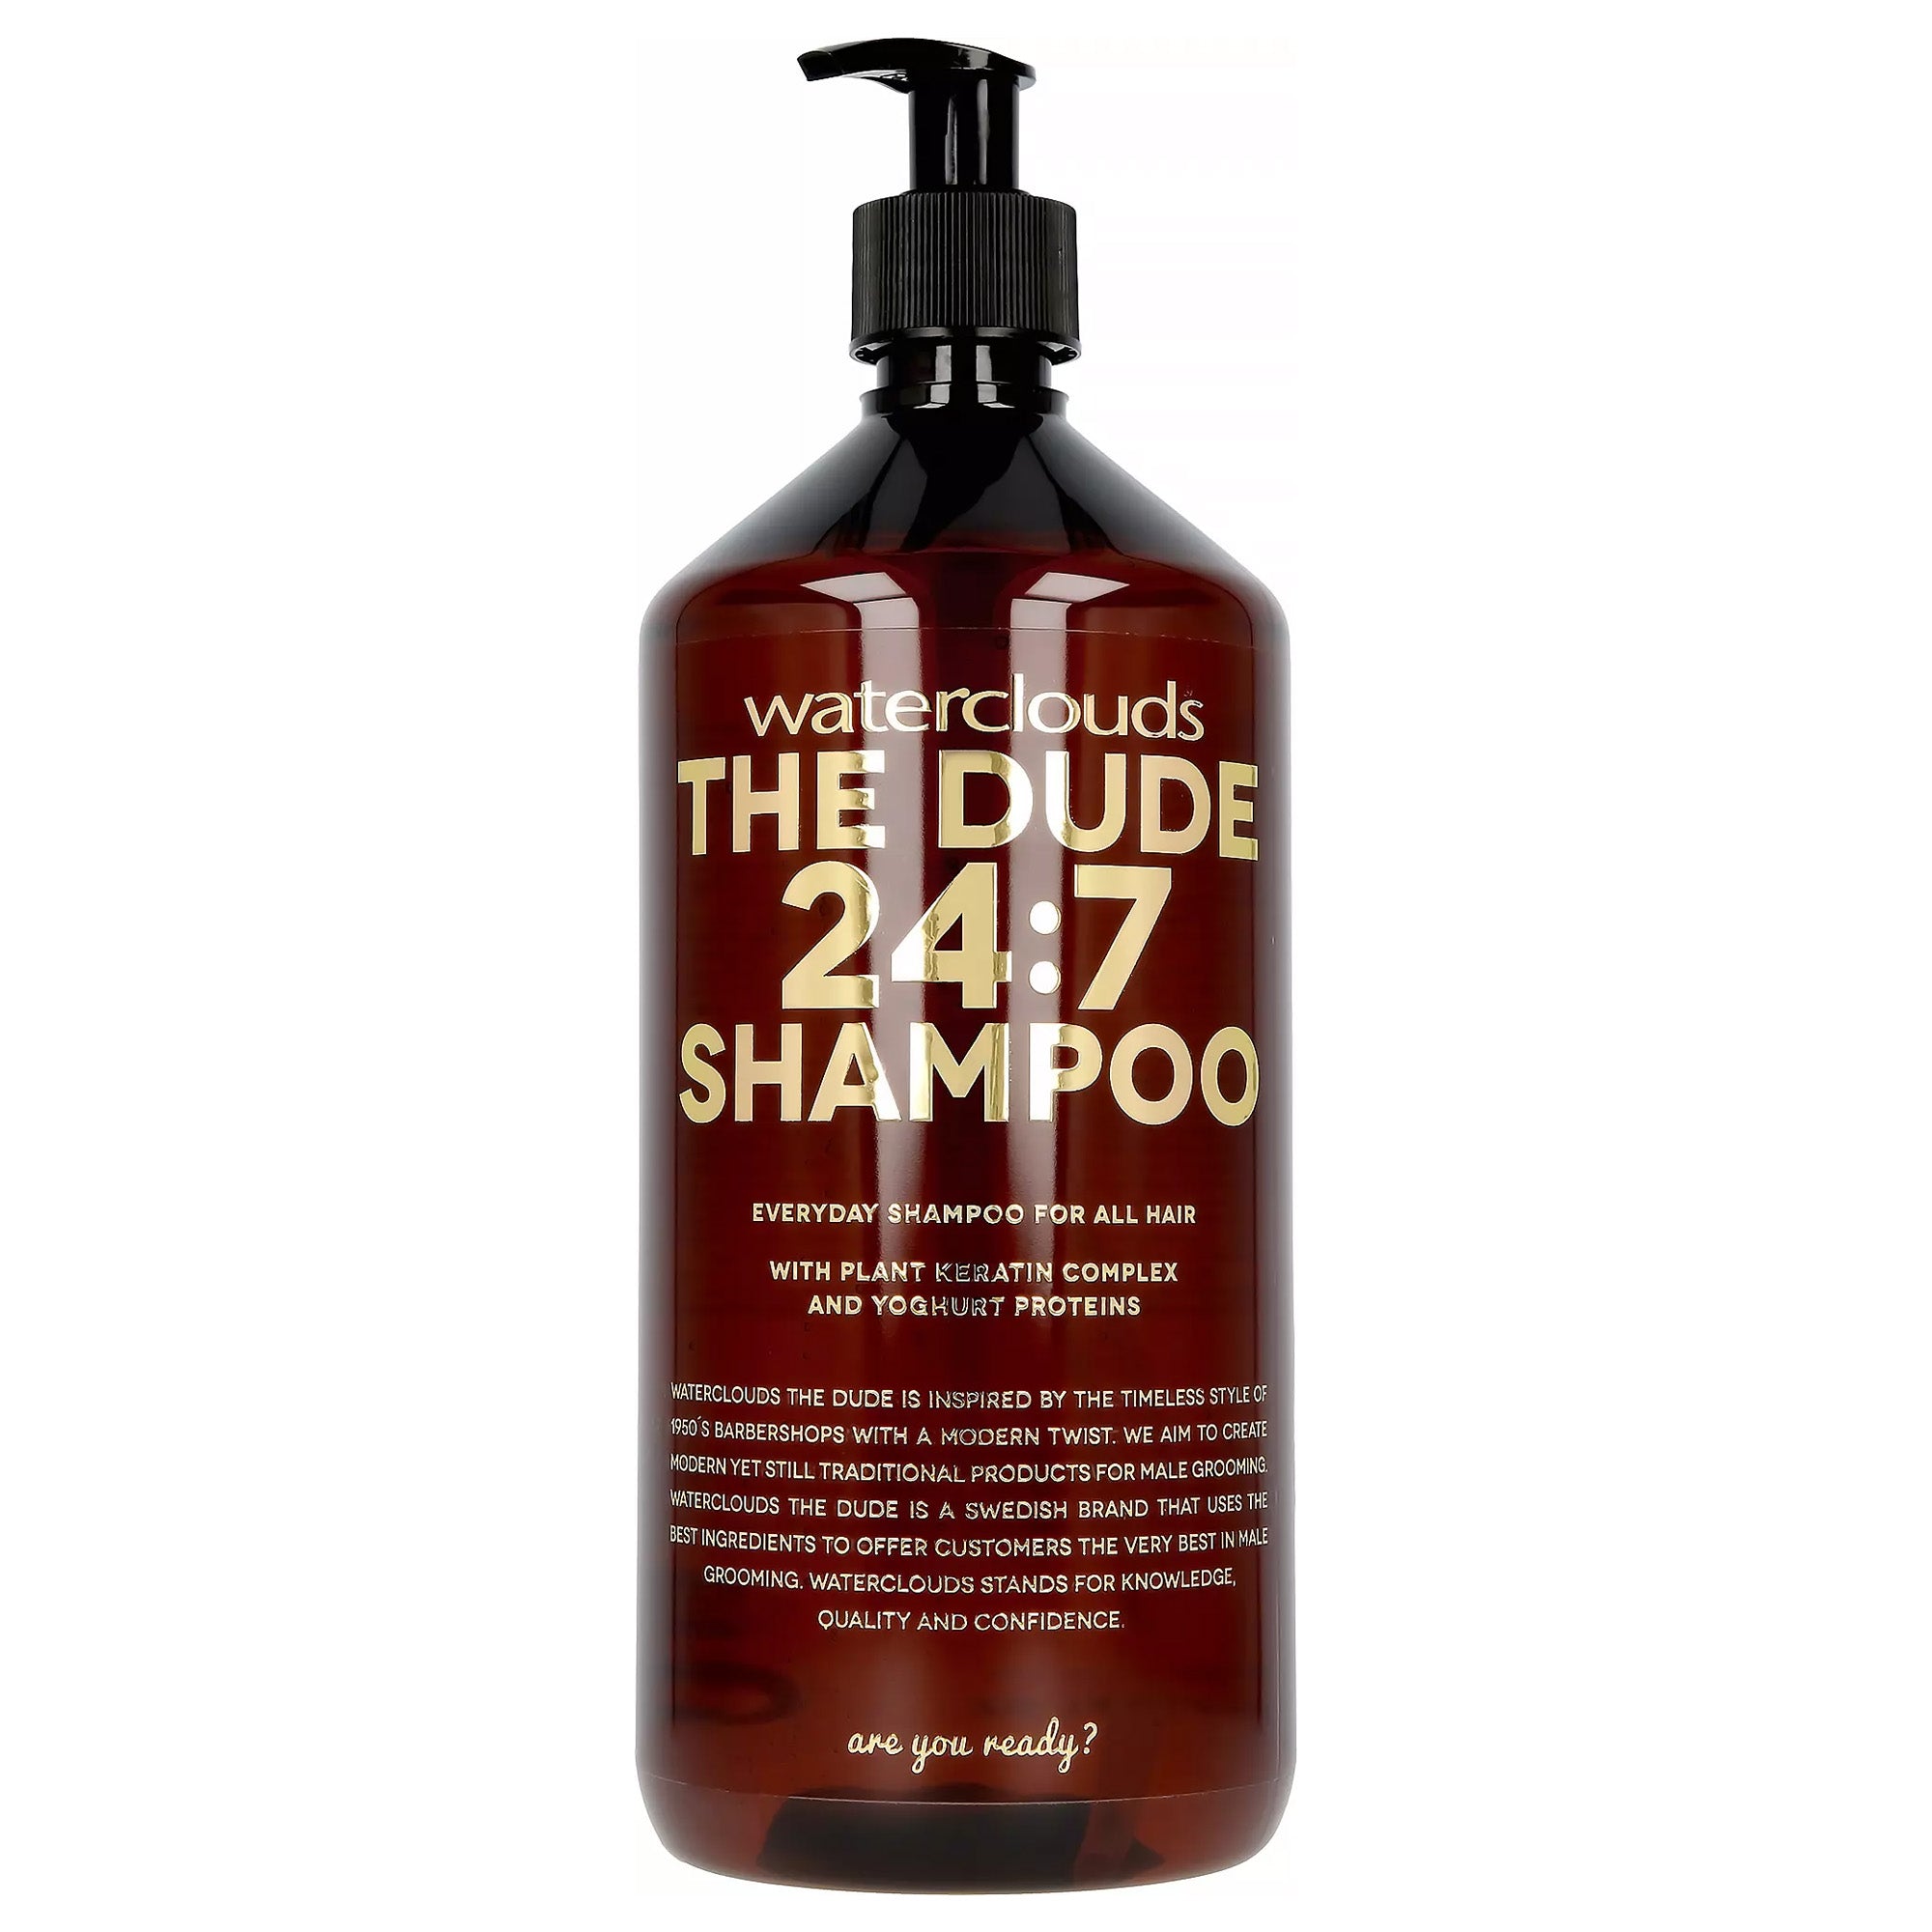 24:7 Shampoo